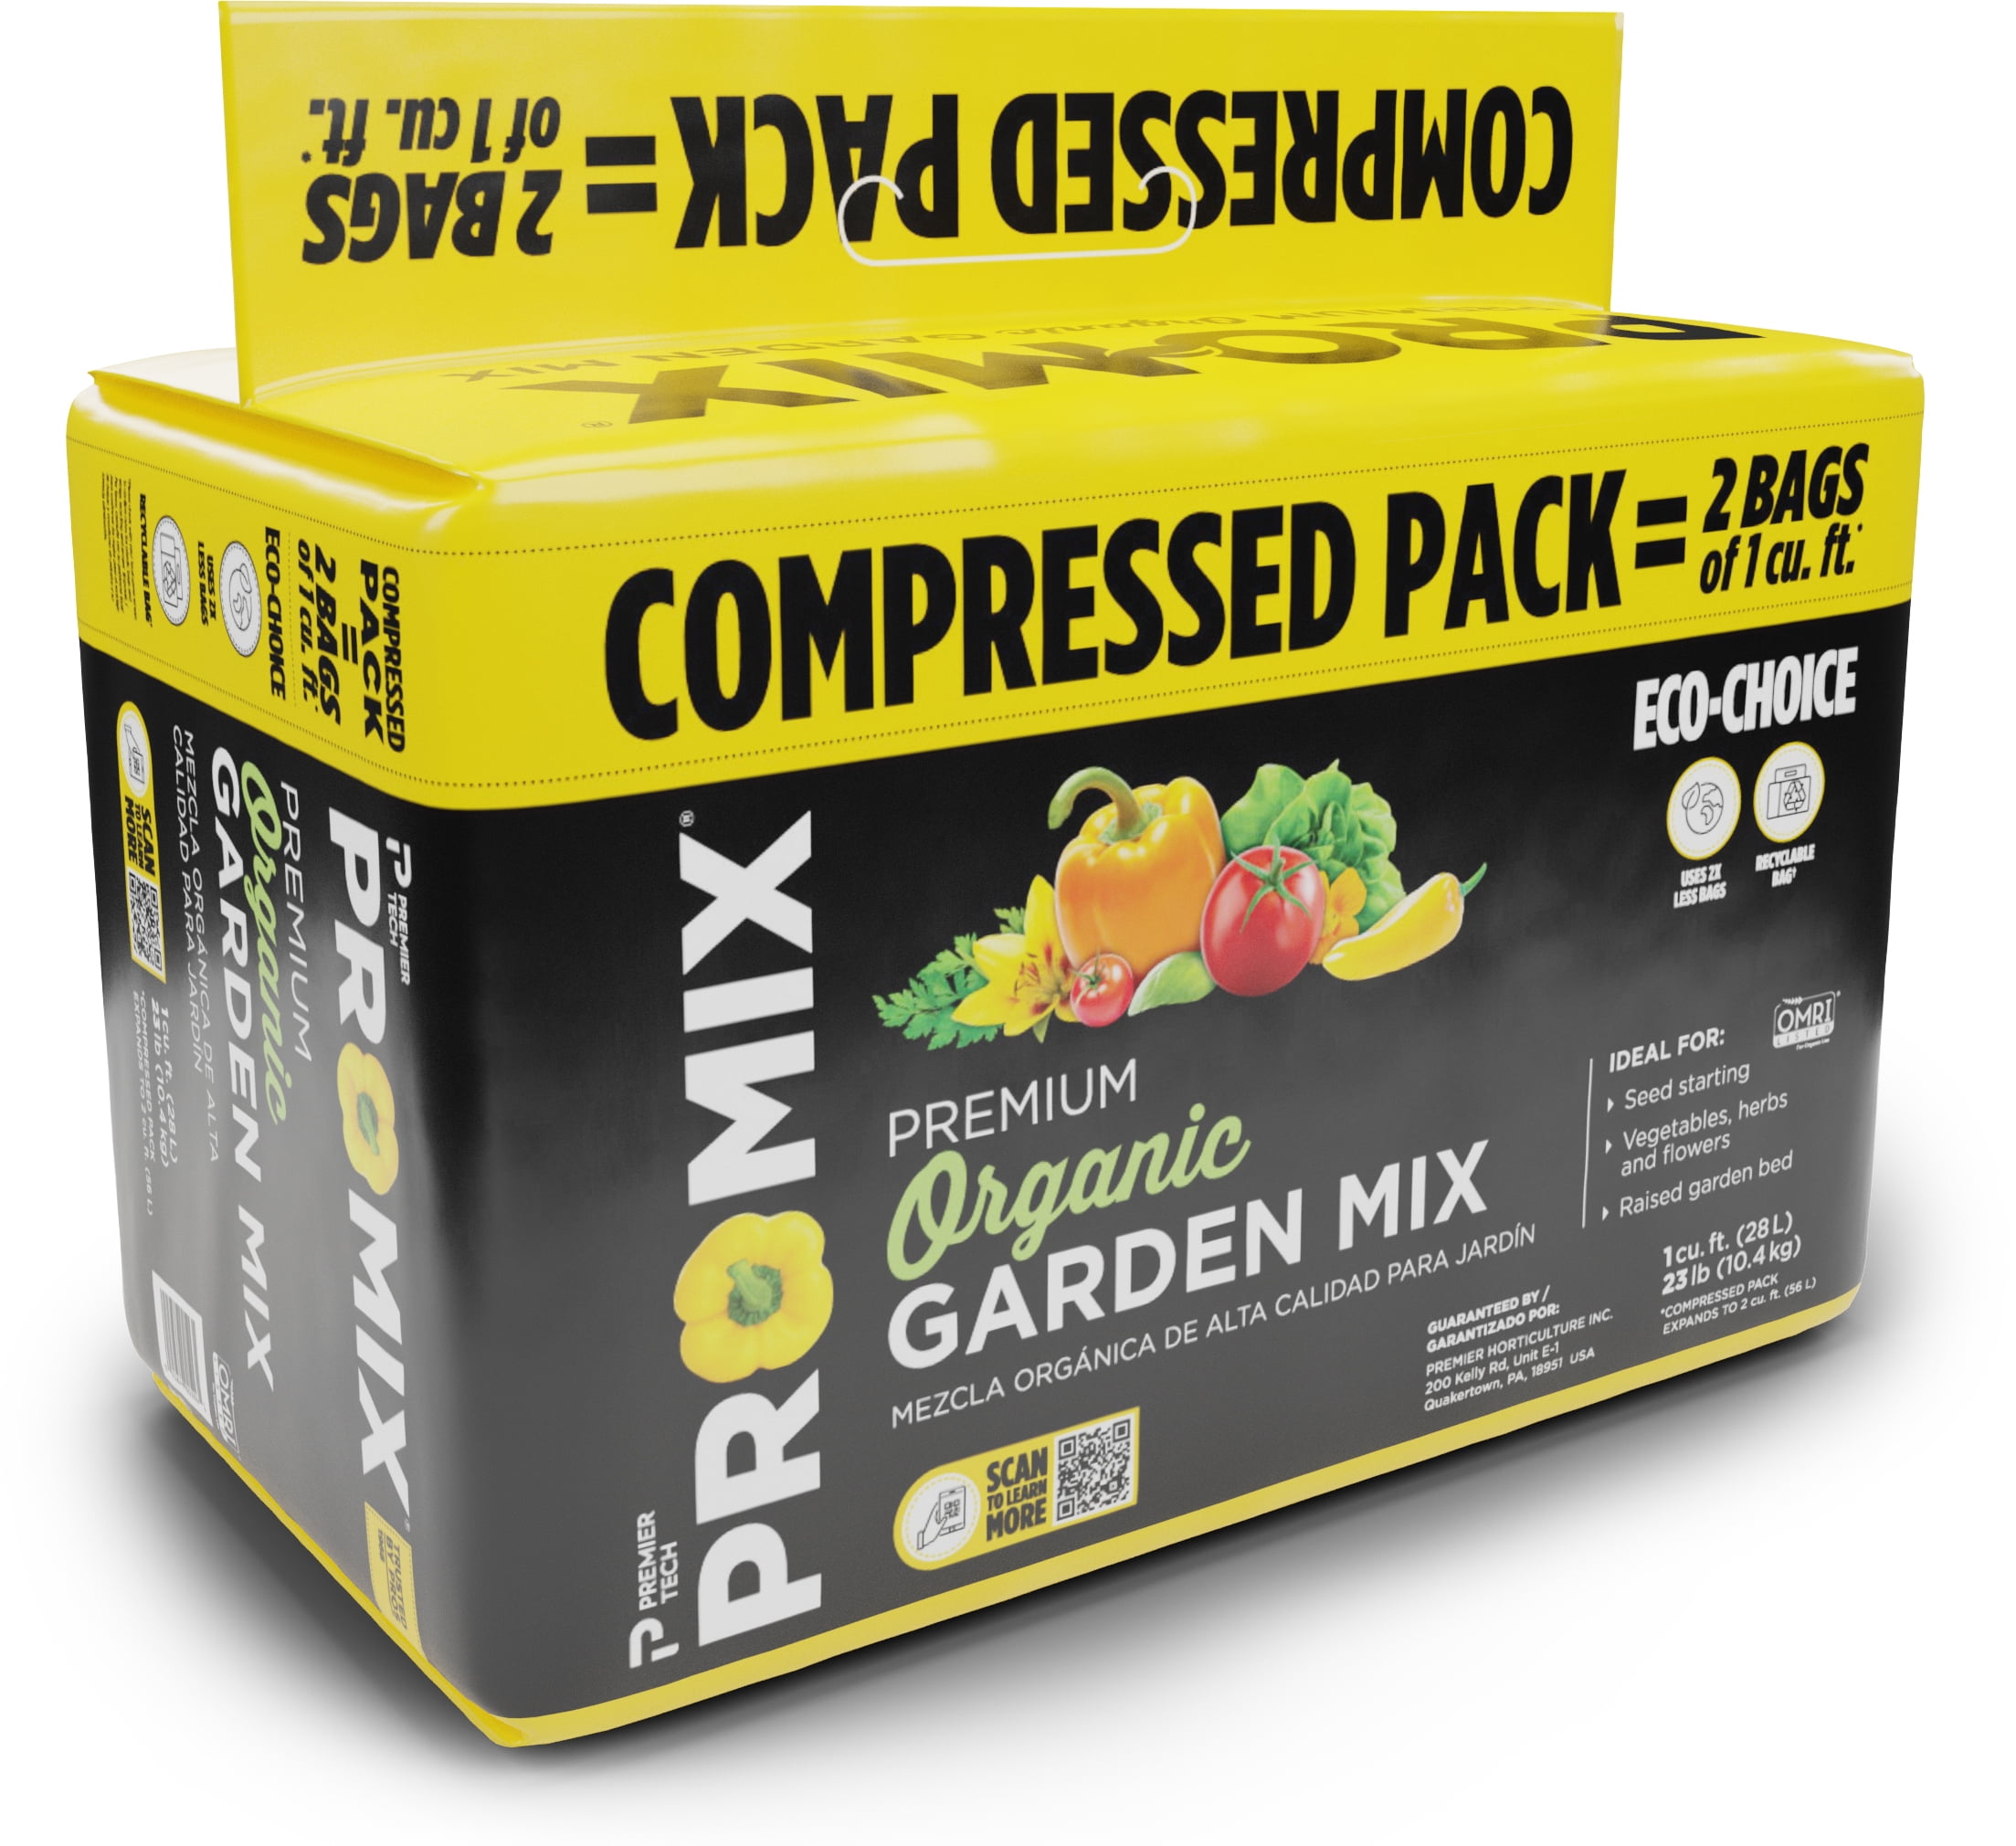 PRO-MIX Premium Organic Garden Mix 2 Cu. ft. Compressed ...